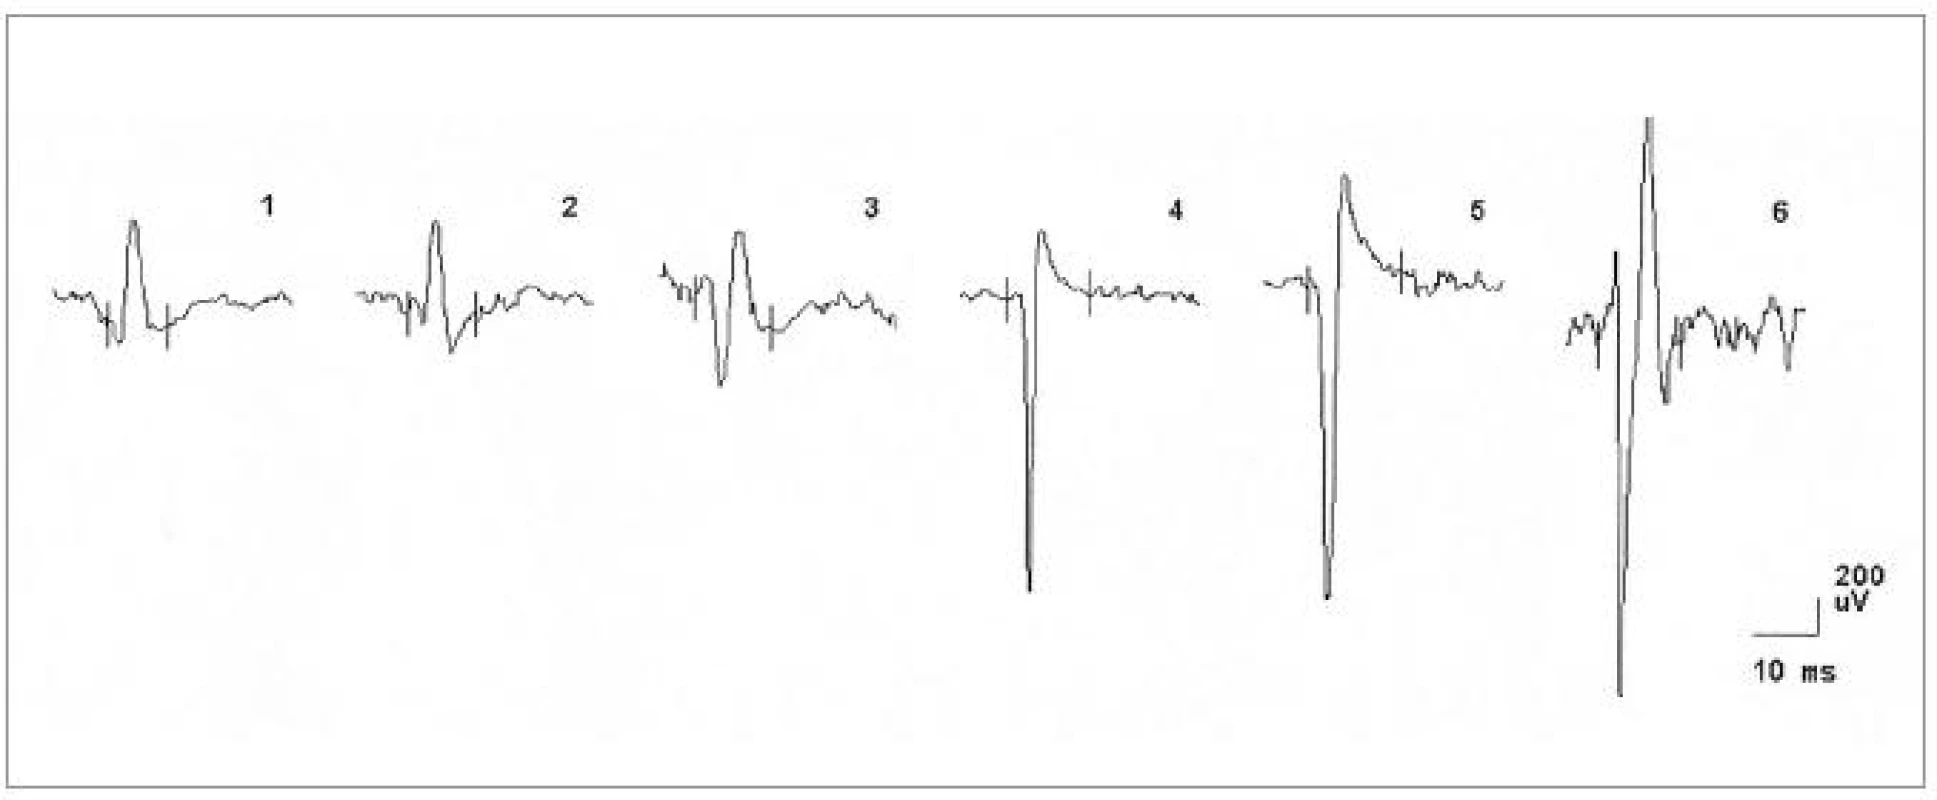 EMG nález při vyšetření musculus vastus medialis vpravo u pacientky č. 1, dokumentující změny v obraze motorických jednotek neurogenního typu (vysoká amplituda MUP, polyfázie).